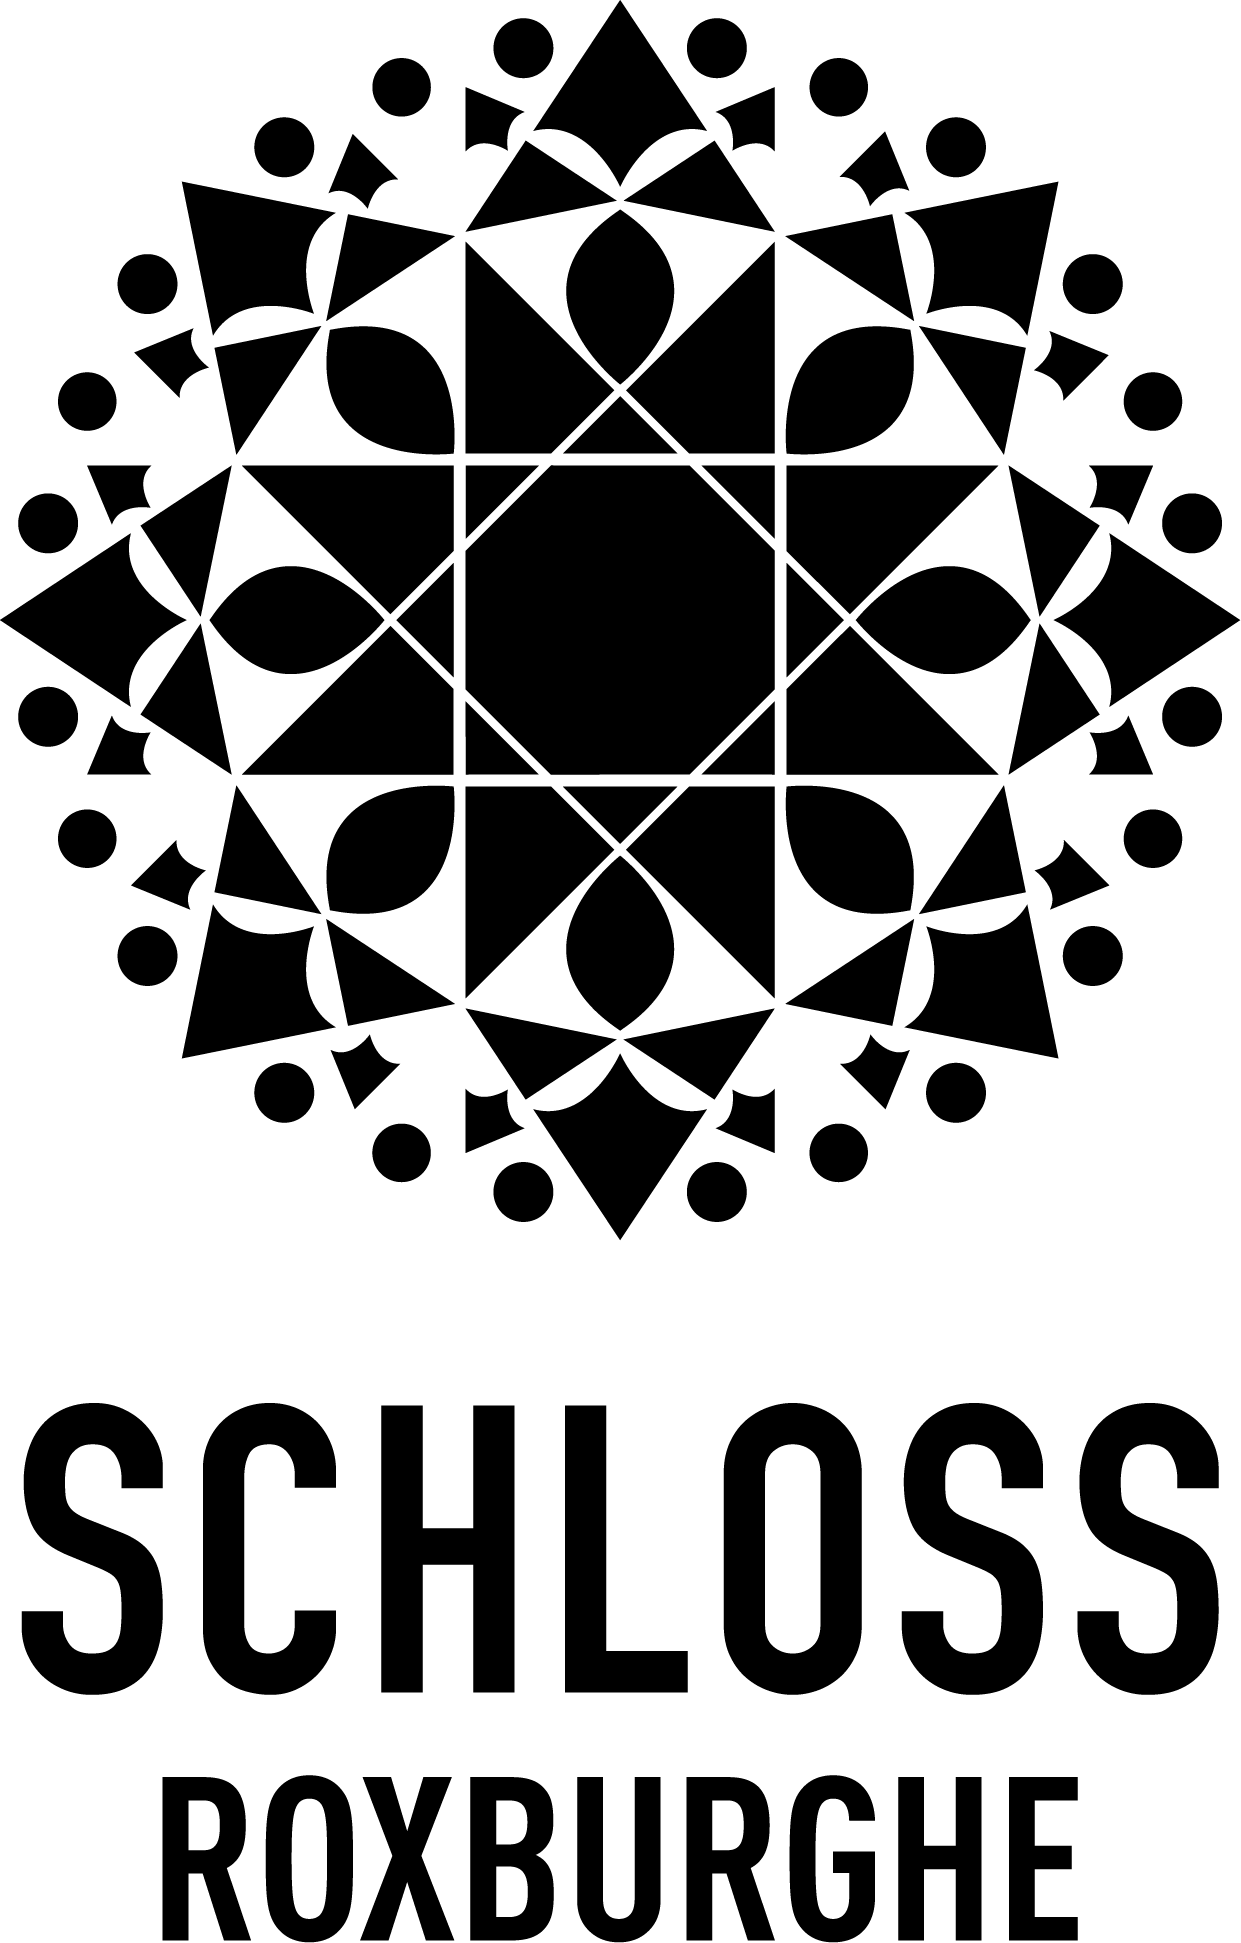 Ein schwarzes Quadrat auf schwarzem Hintergrund